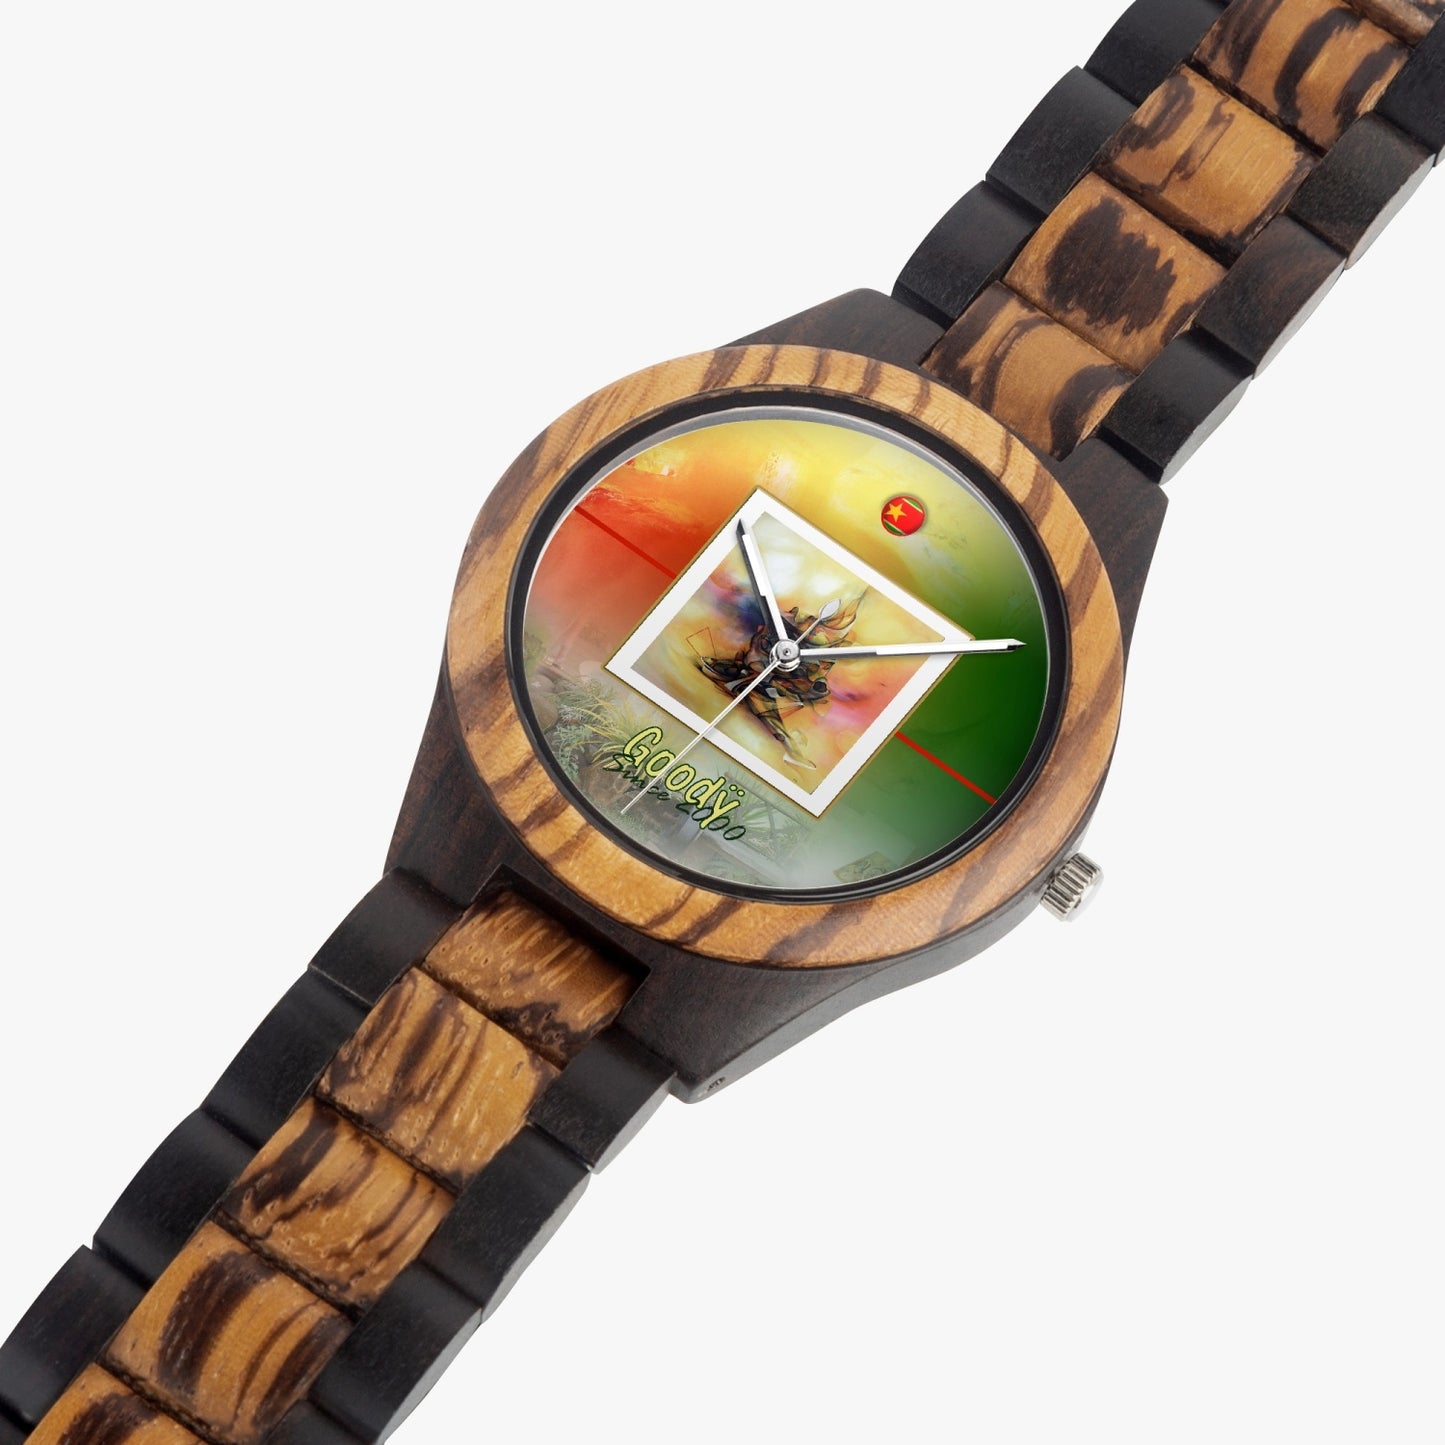 対照的な天然木の時計「Yellowstar」